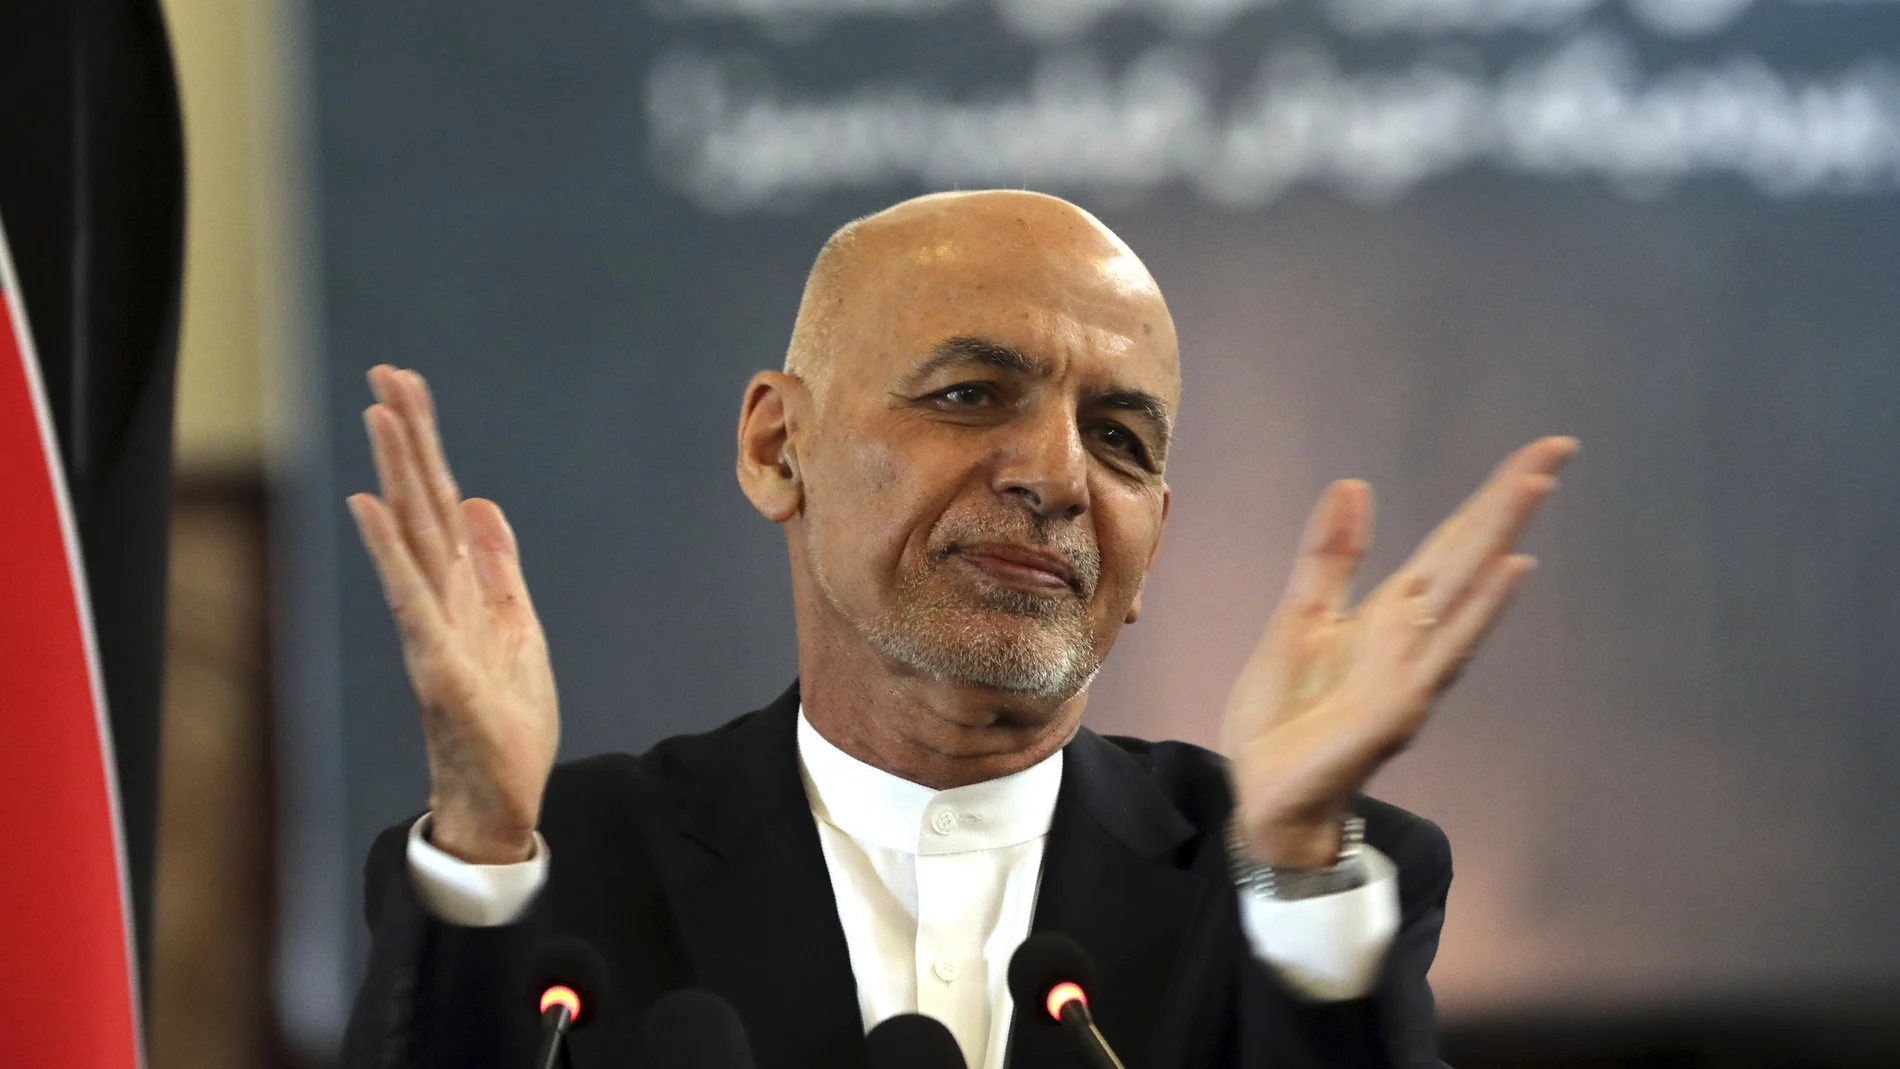 Ghani, exiliado en Emiratos Árabes Unidos, ha explicado que se fue el 15 de agosto "después de que los talibanes entrasen inesperadamente" en la capital